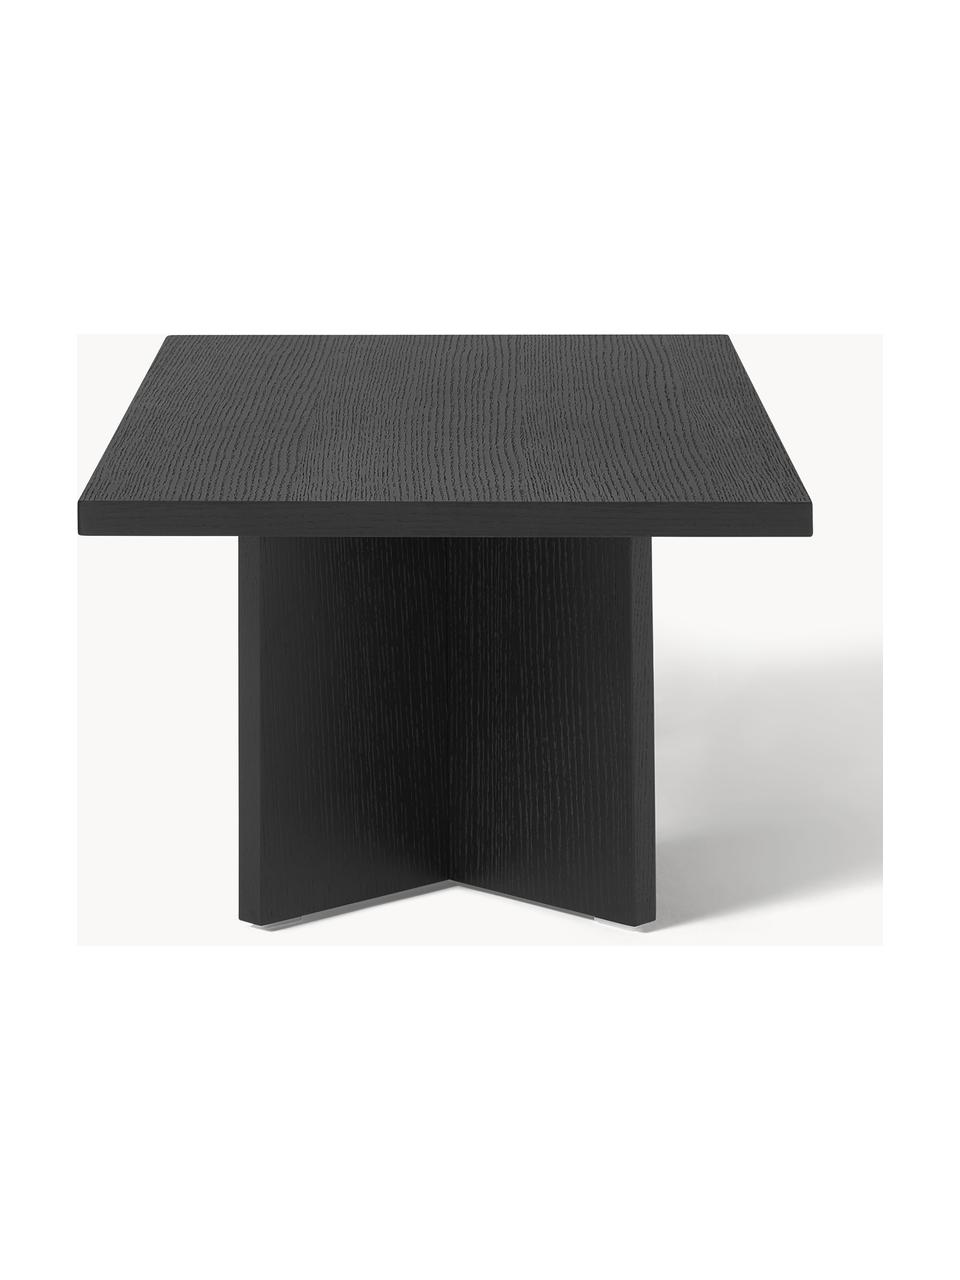 Dřevěný konferenční stolek Toni, Lakovaná dřevovláknitá deska střední hustoty (MDF) s dubovou dýhou

Tento produkt je vyroben z udržitelných zdrojů dřeva s certifikací FSC®., Lakovaná černá dubová dýha, Š 100 cm, H 55 cm